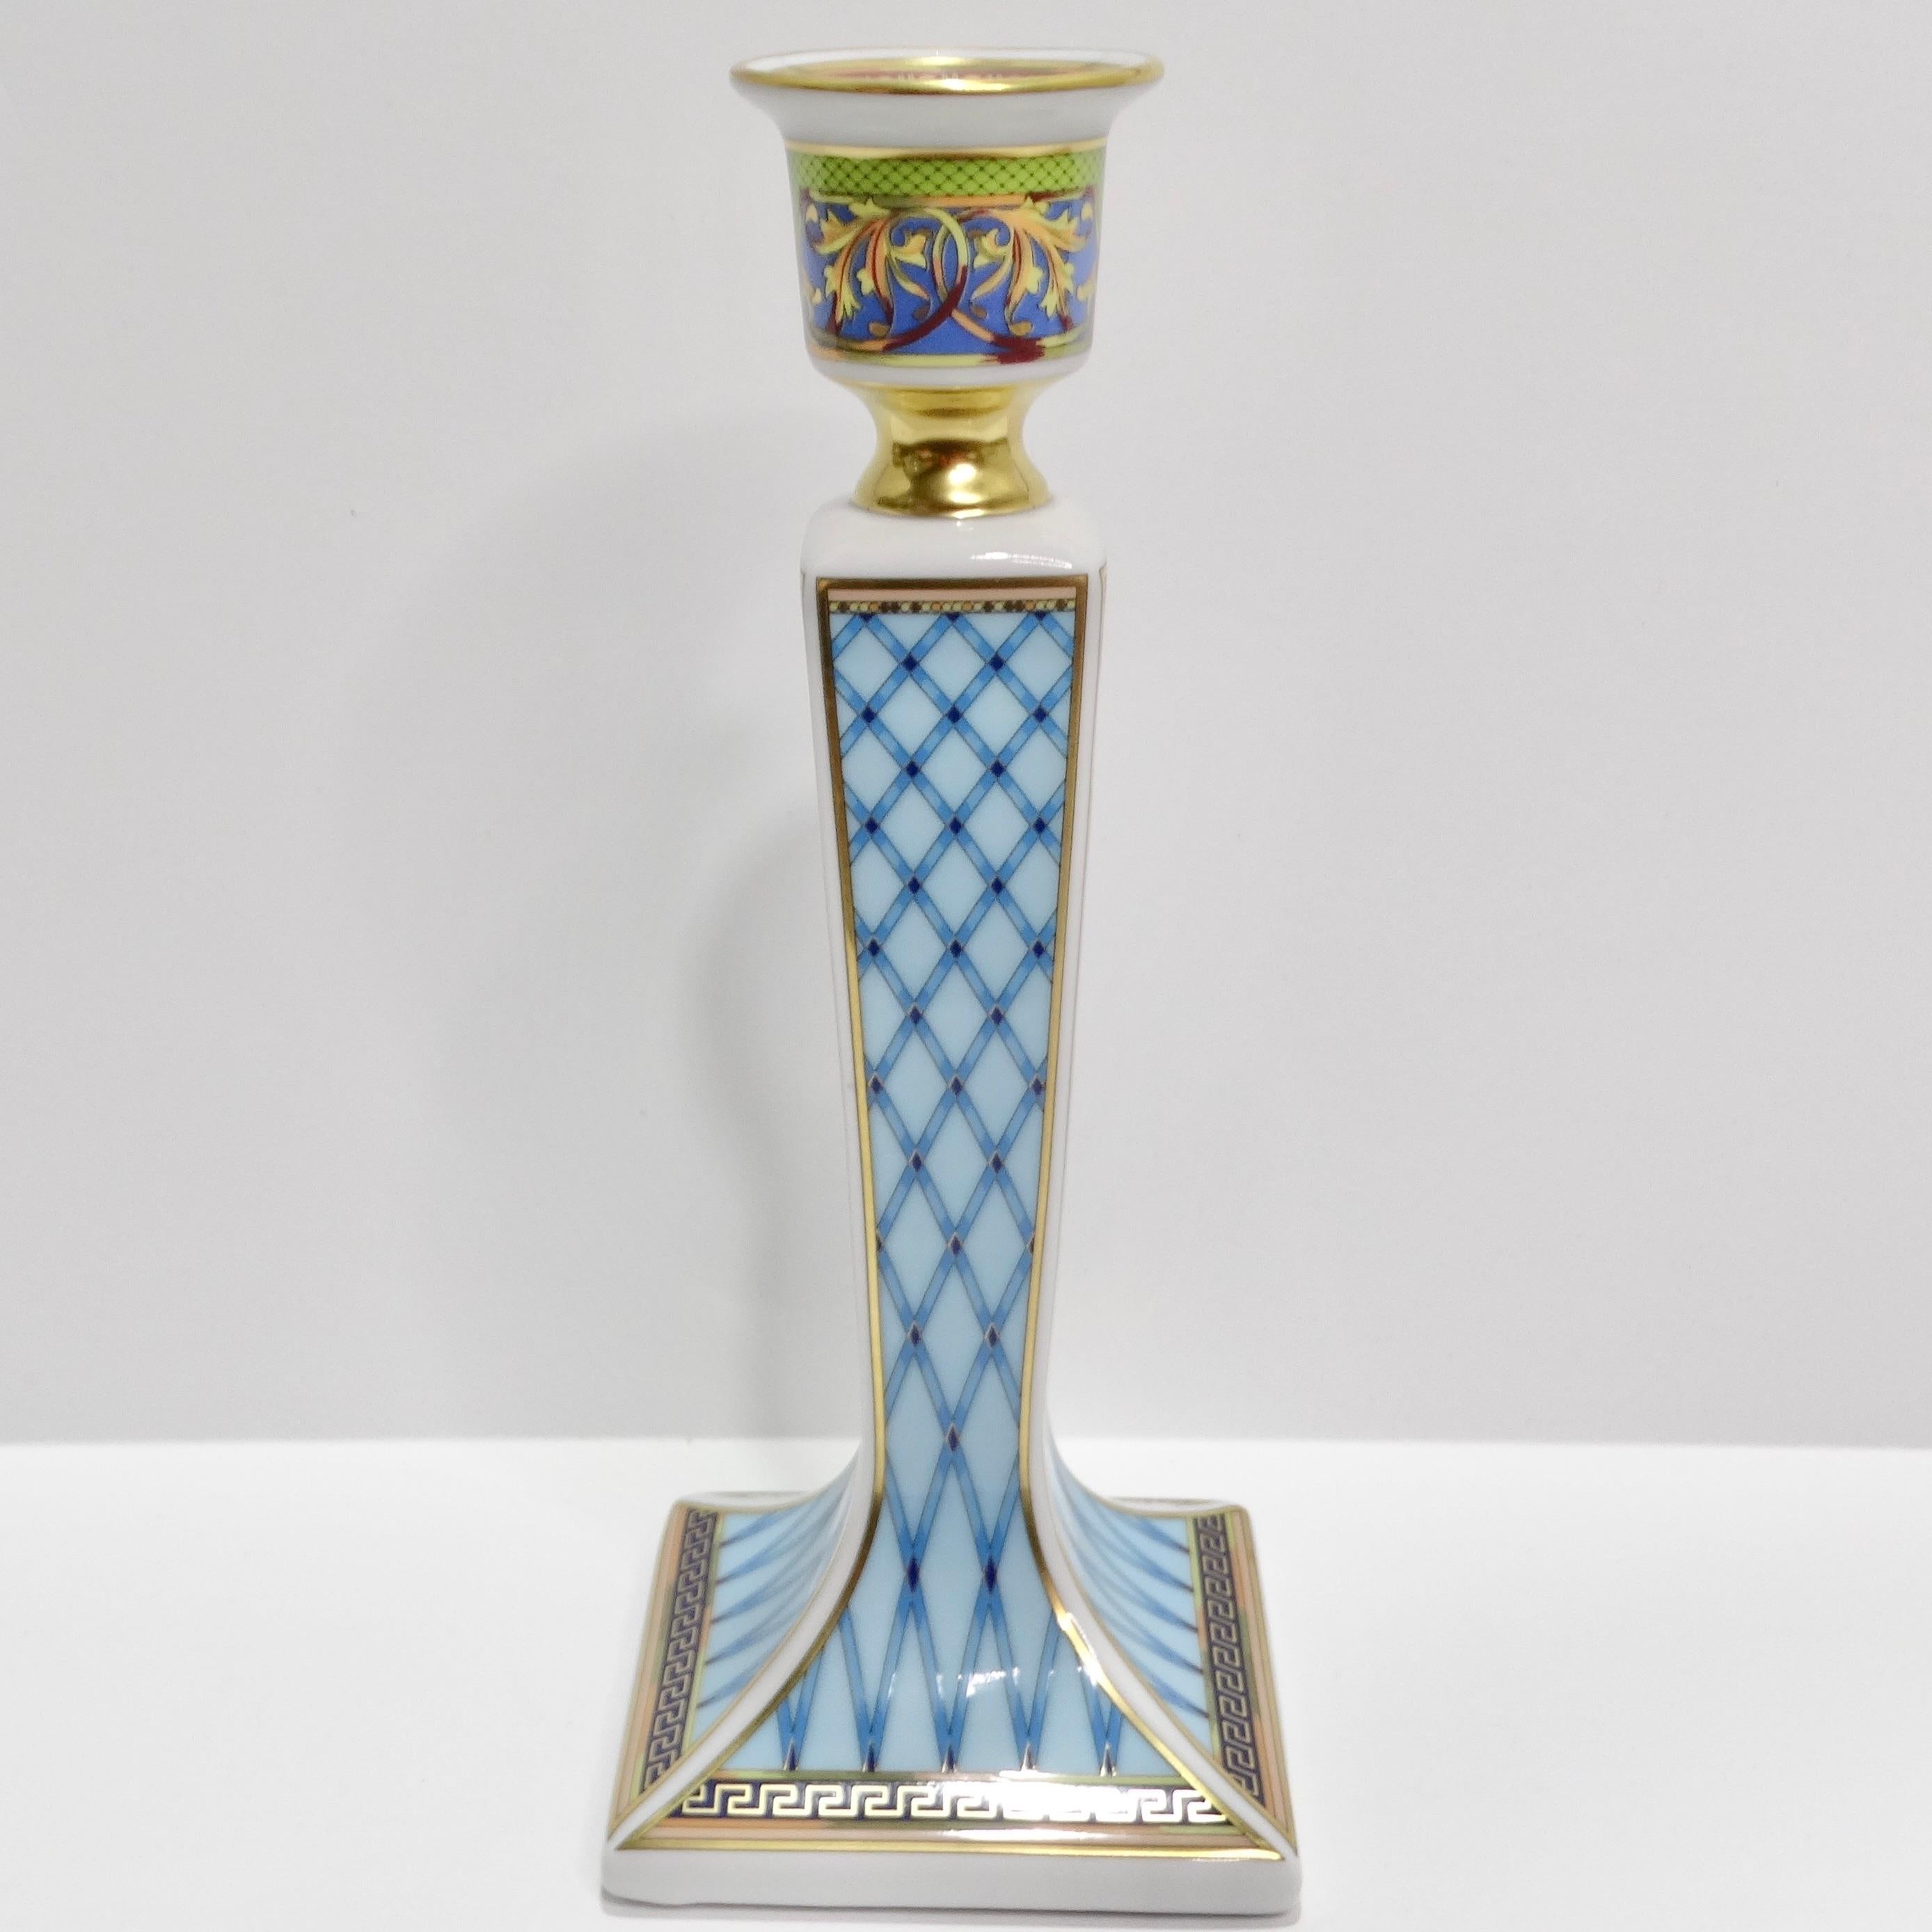 Der Rosenthal 1990er Russian Dream Porzellan-Kerzenhalter von Versace ist eine luxuriöse und künstlerische Ergänzung, die Opulenz in Ihr Zuhause bringt. Der aus feinem Porzellan gefertigte Kerzenständer ist mit einem komplizierten, mehrfarbigen